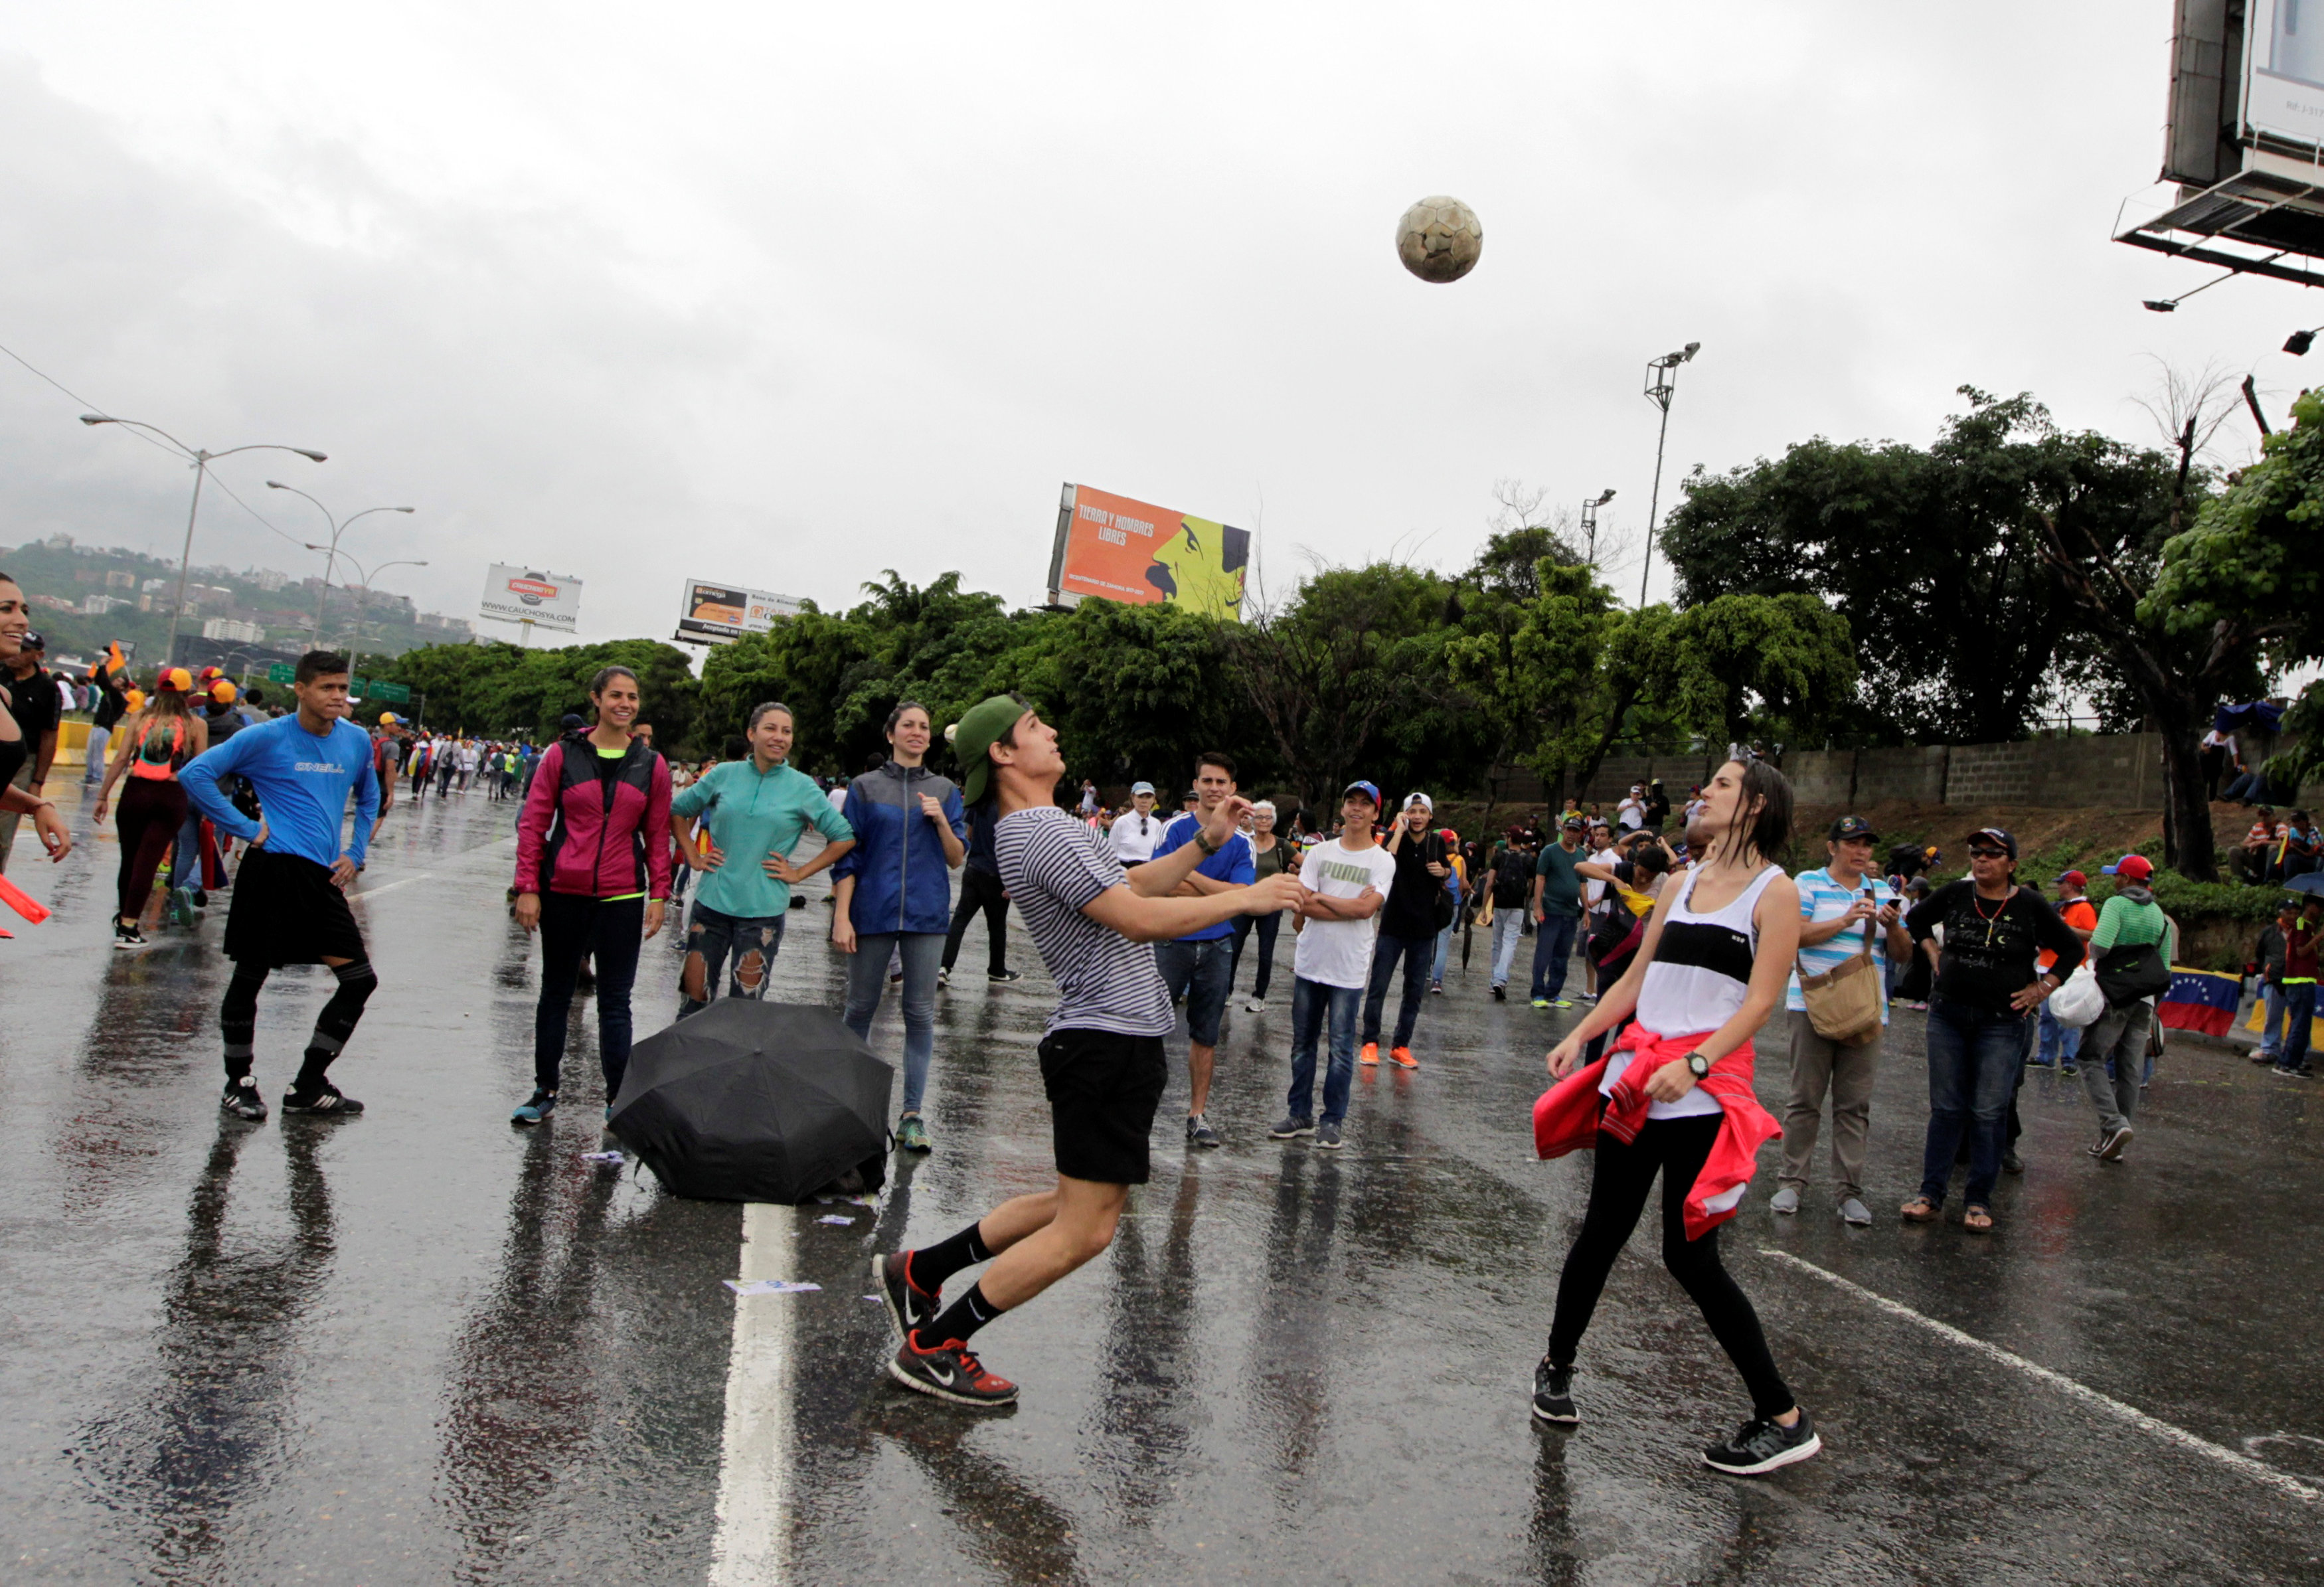 أحد المتظاهرين الفنزويليين يلعب الكرة